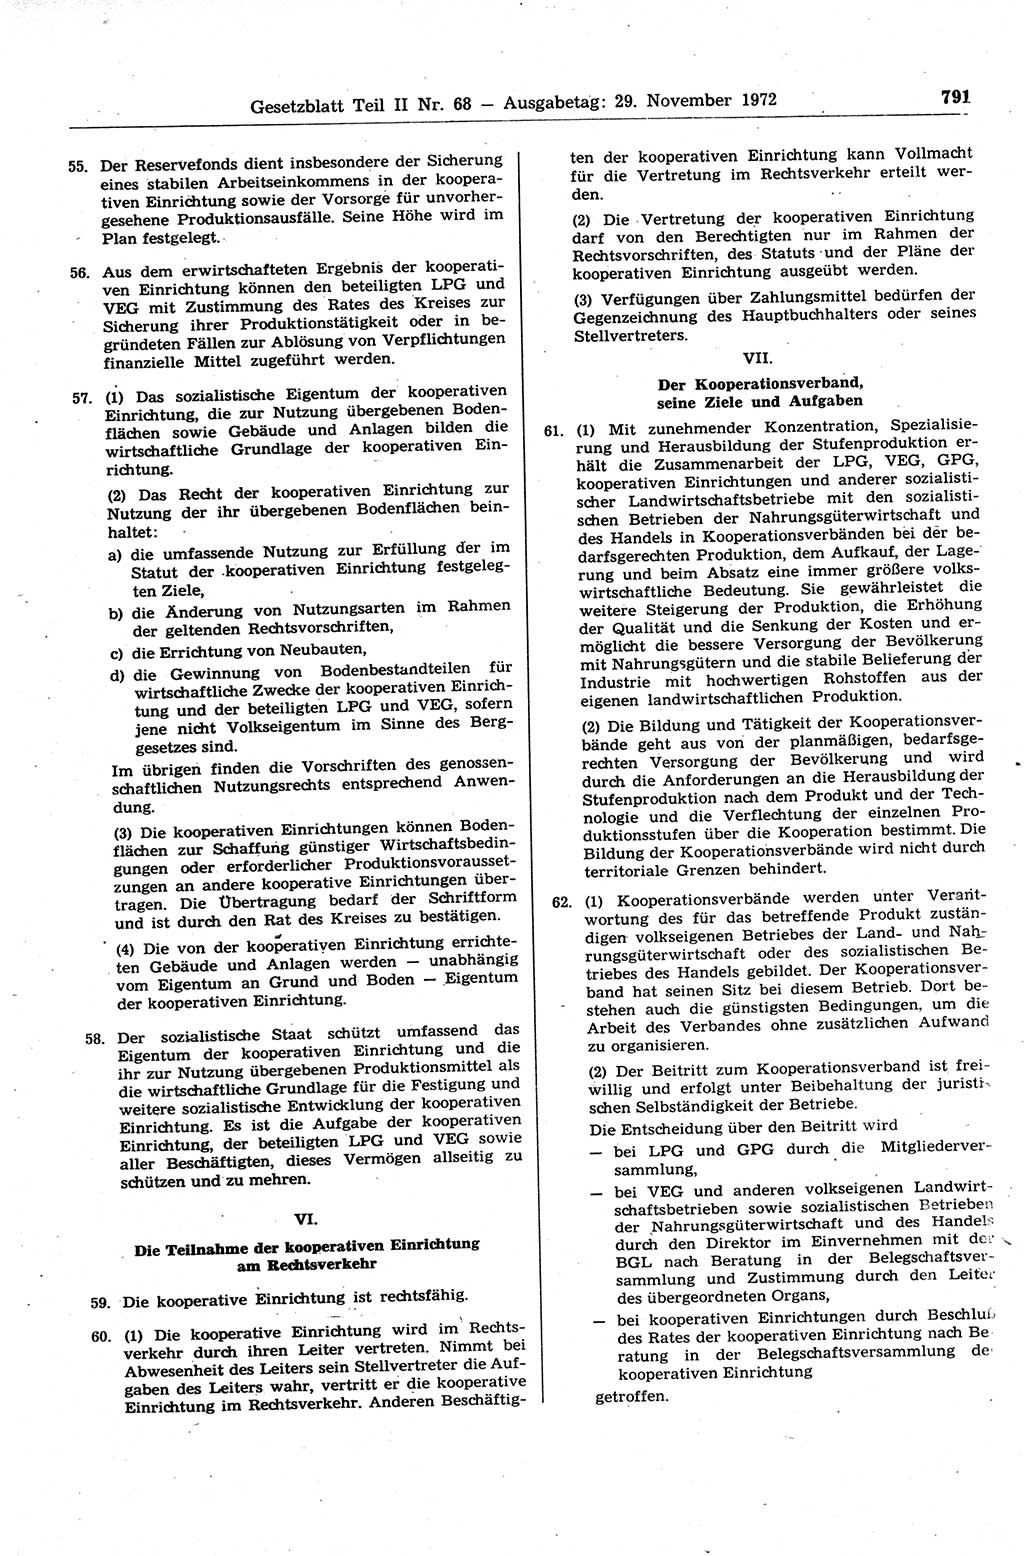 Gesetzblatt (GBl.) der Deutschen Demokratischen Republik (DDR) Teil ⅠⅠ 1972, Seite 791 (GBl. DDR ⅠⅠ 1972, S. 791)